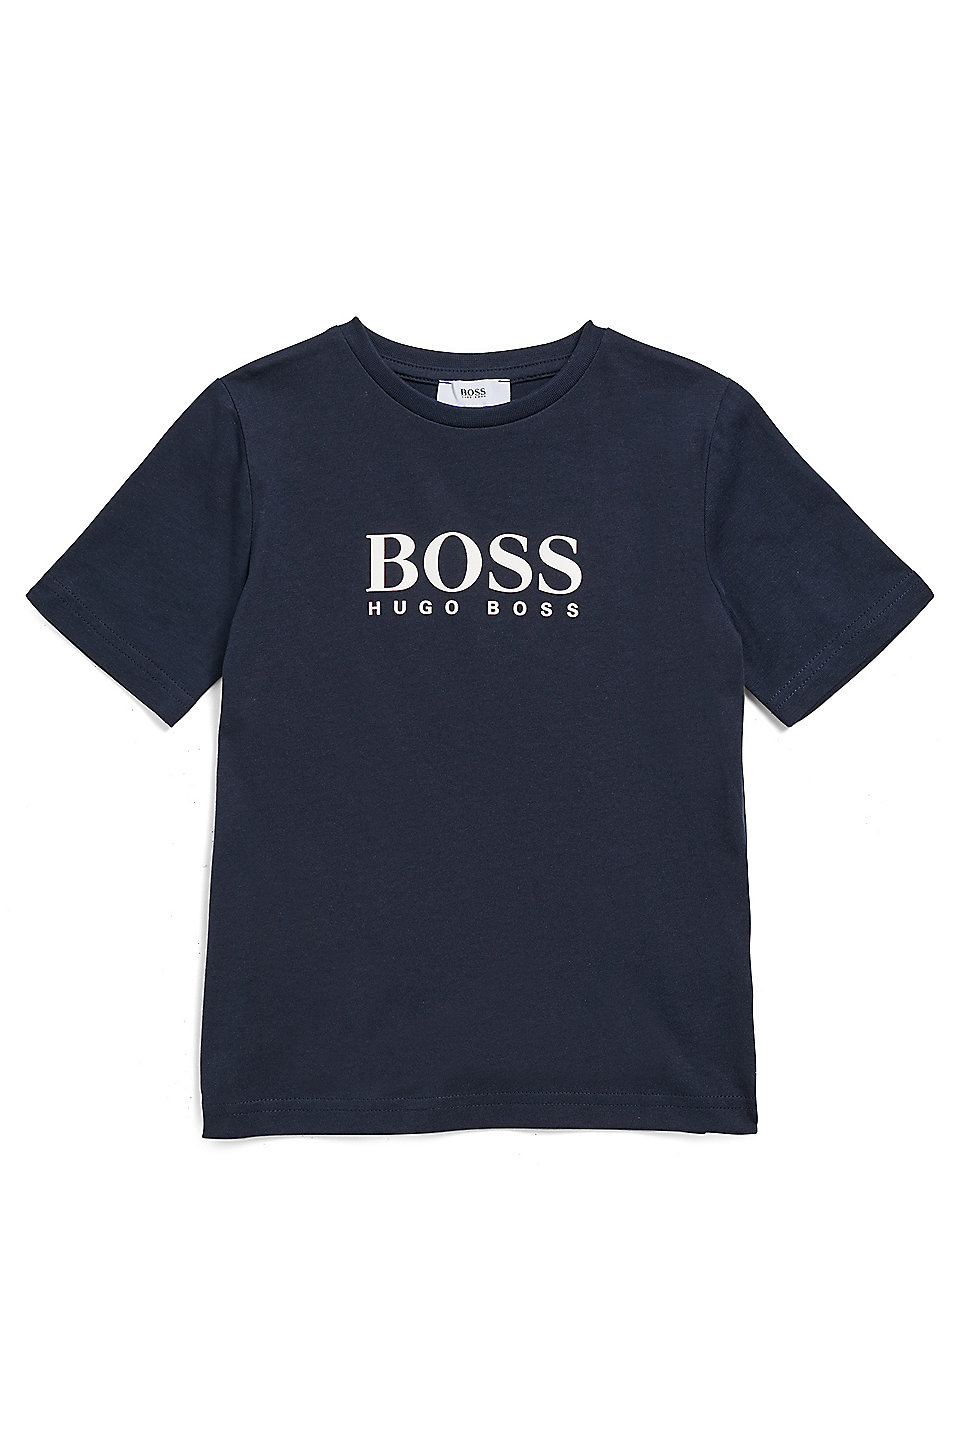 Sizes 6-16 HUGO BOSS Boys Logo T-shirt in Black